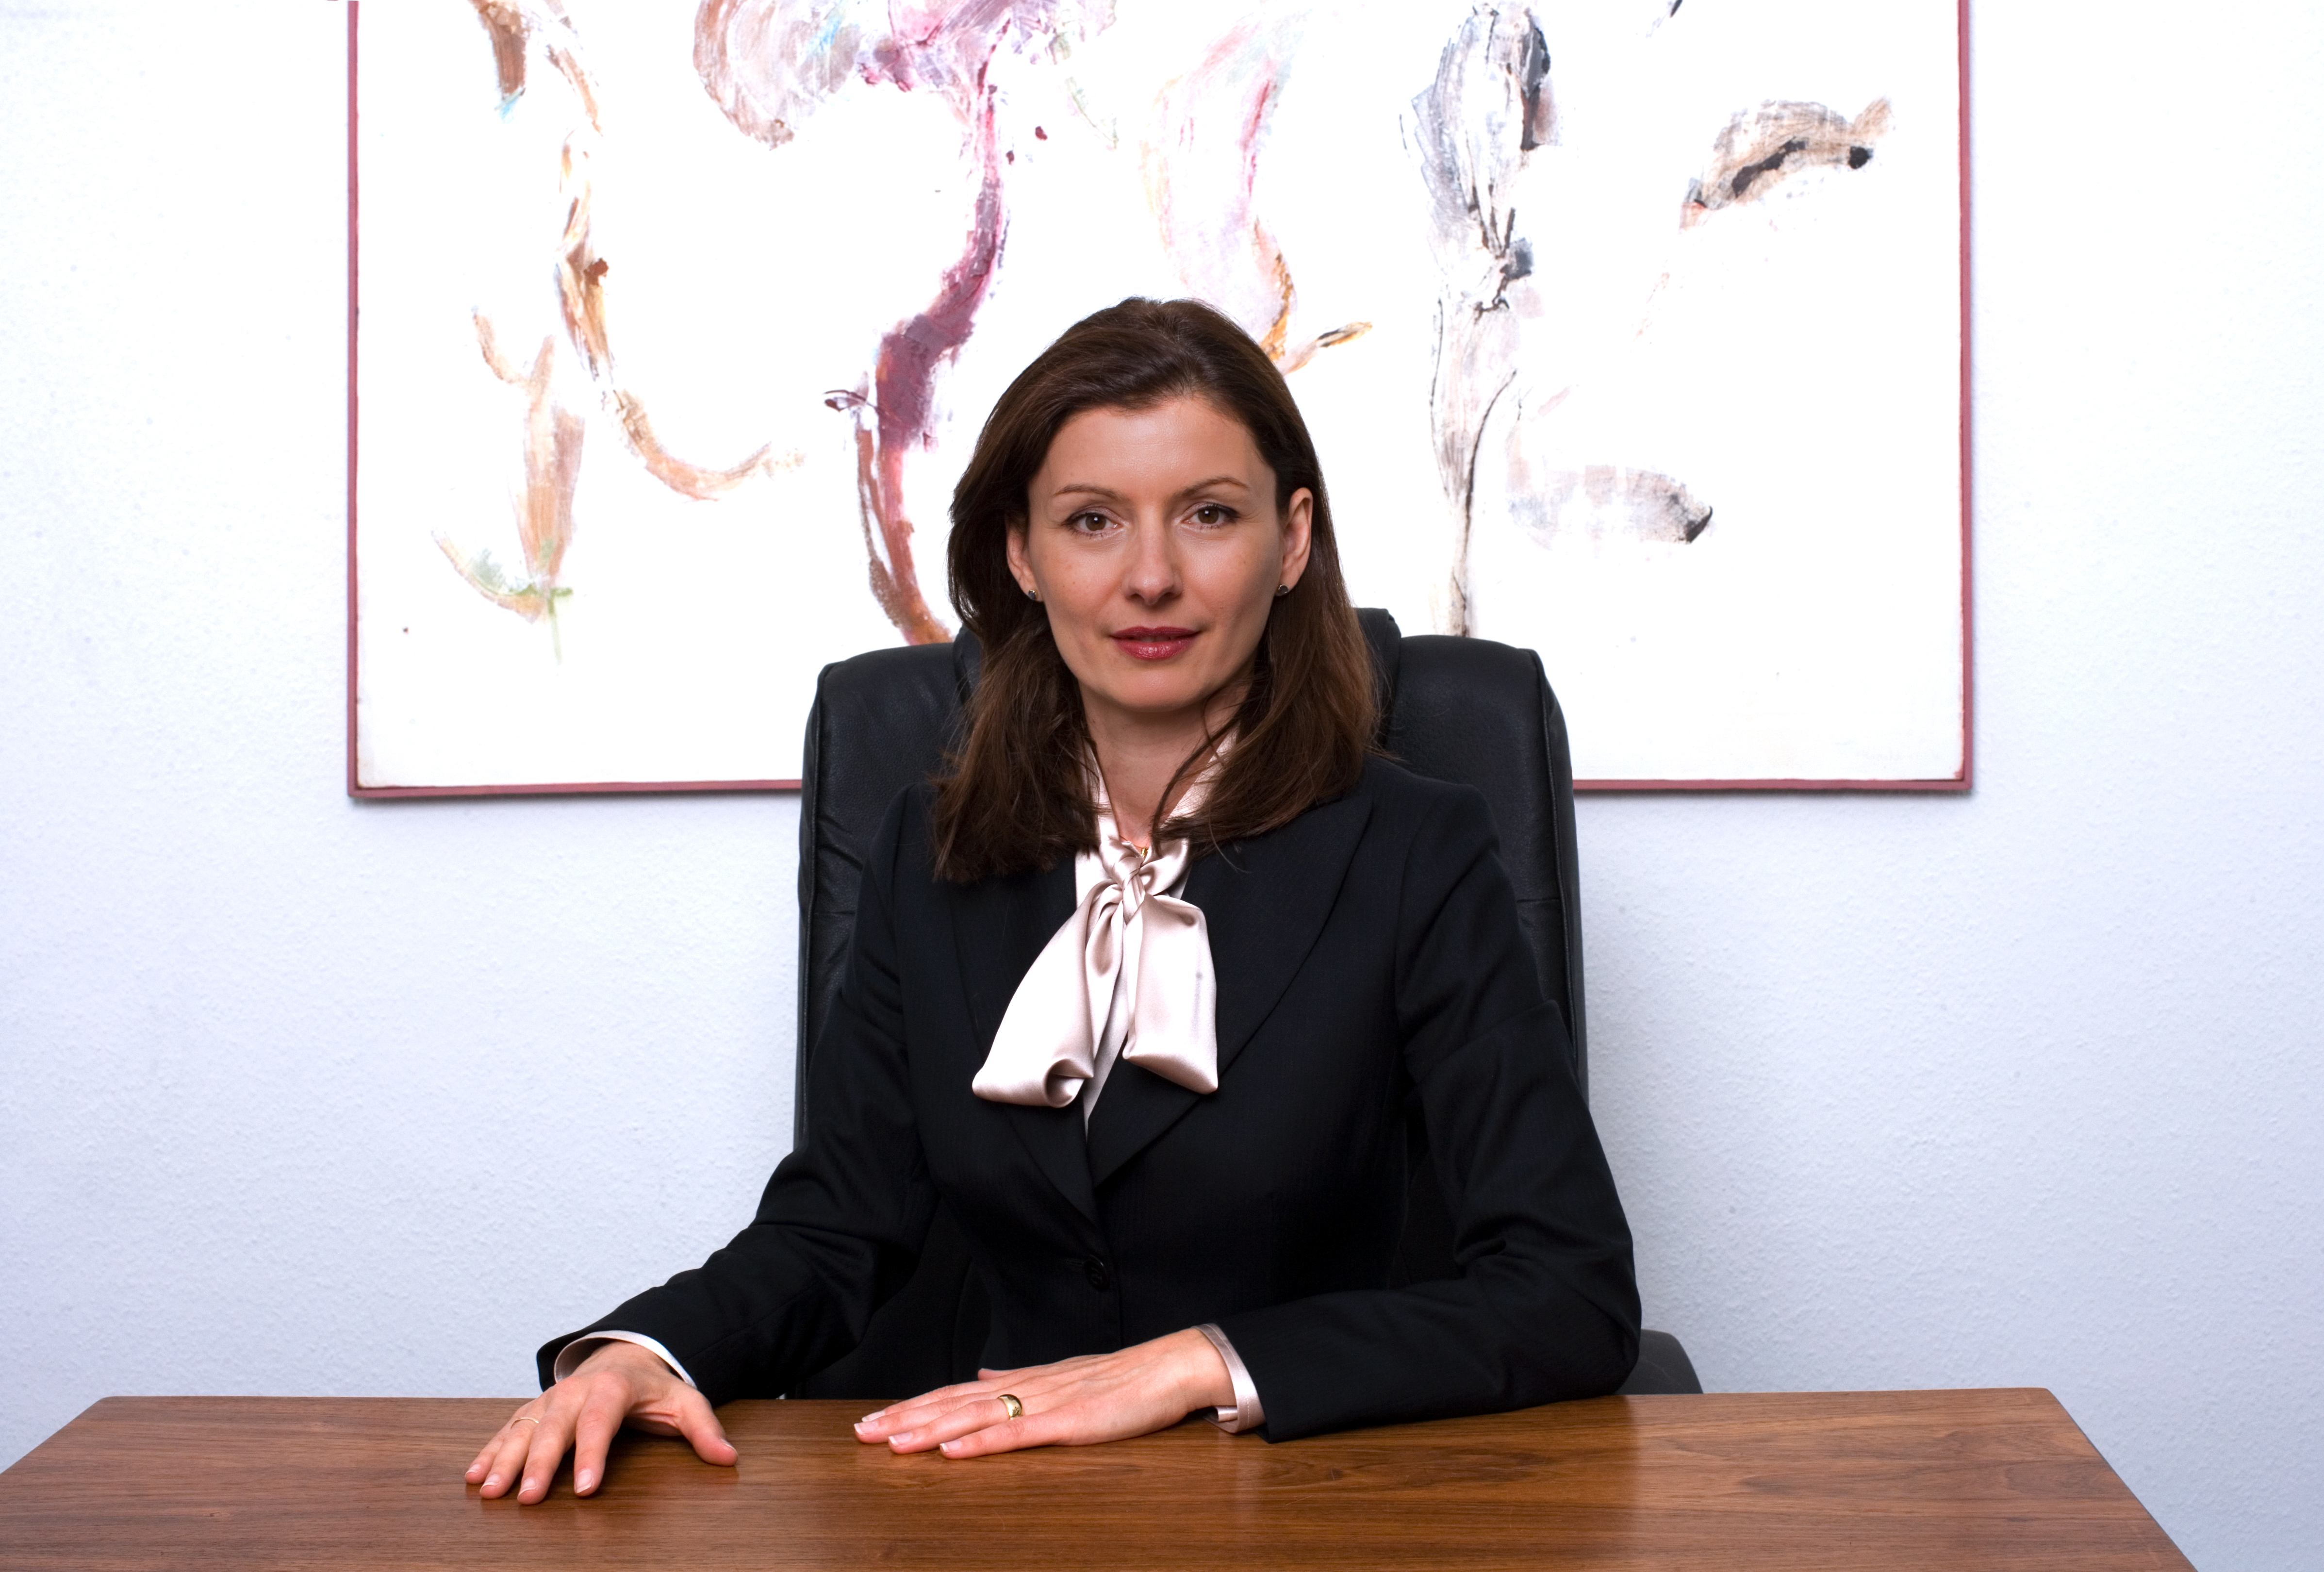 Rechtsanwältin Magdalena Schäfer ist Teil des Netzwerkes von RatioProtect